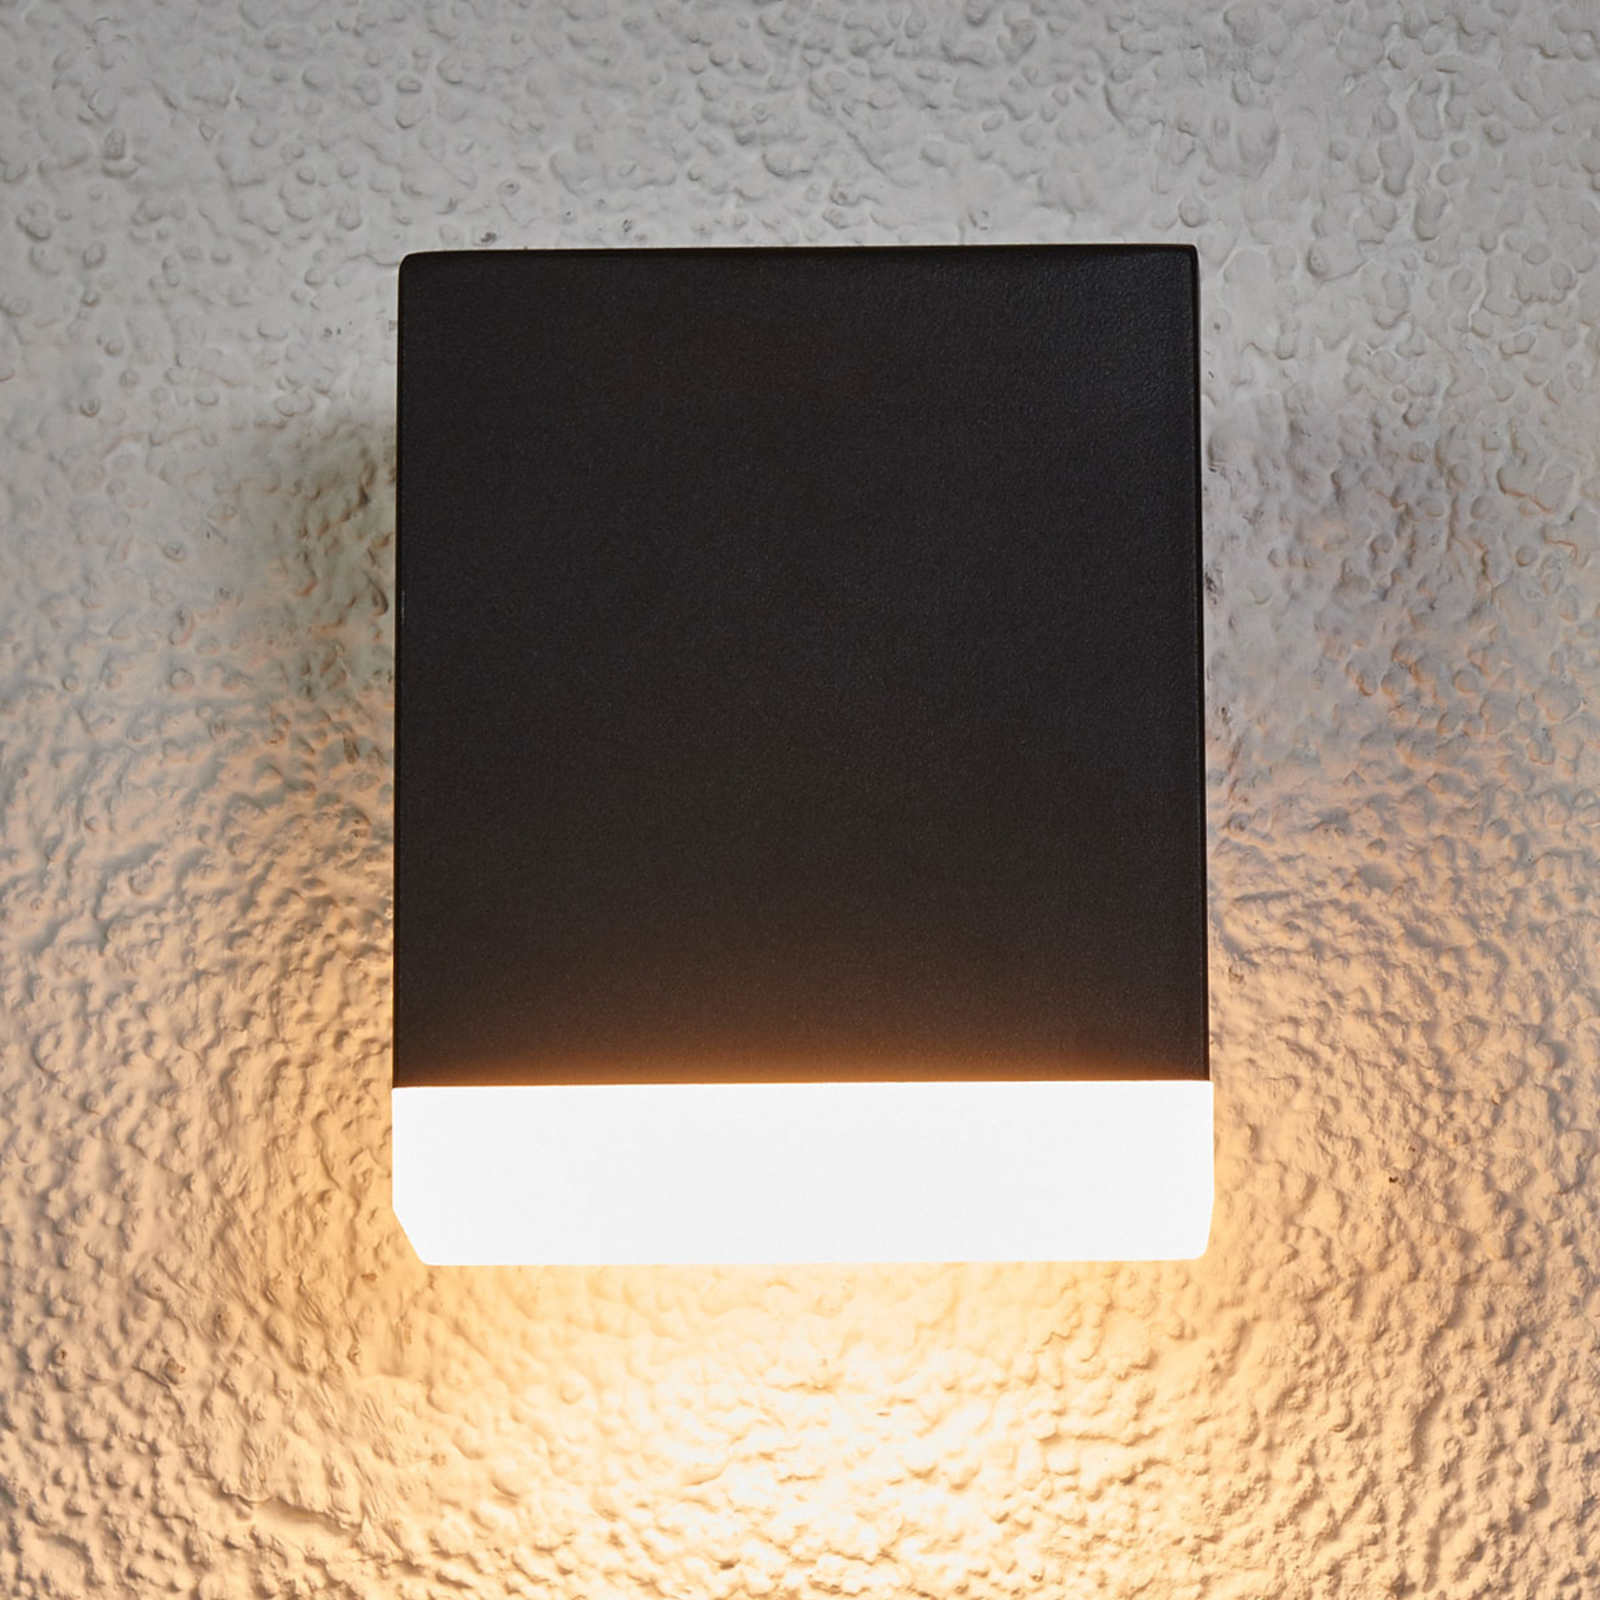 Modern LED kültéri fali lámpa Aya fekete színben